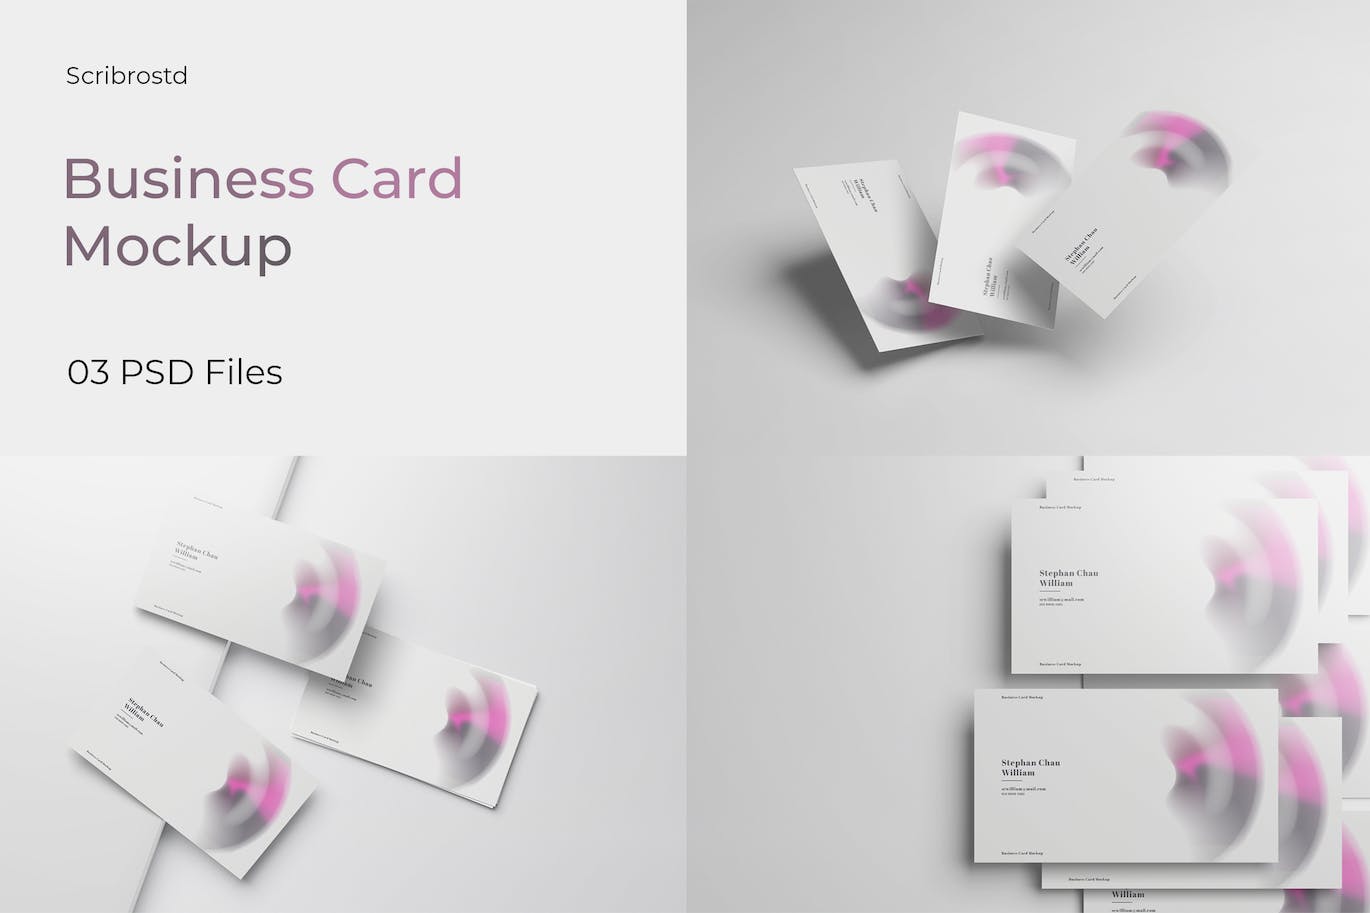 商业名片设计样机模板v3 Business Card Mockup V3 样机素材 第1张